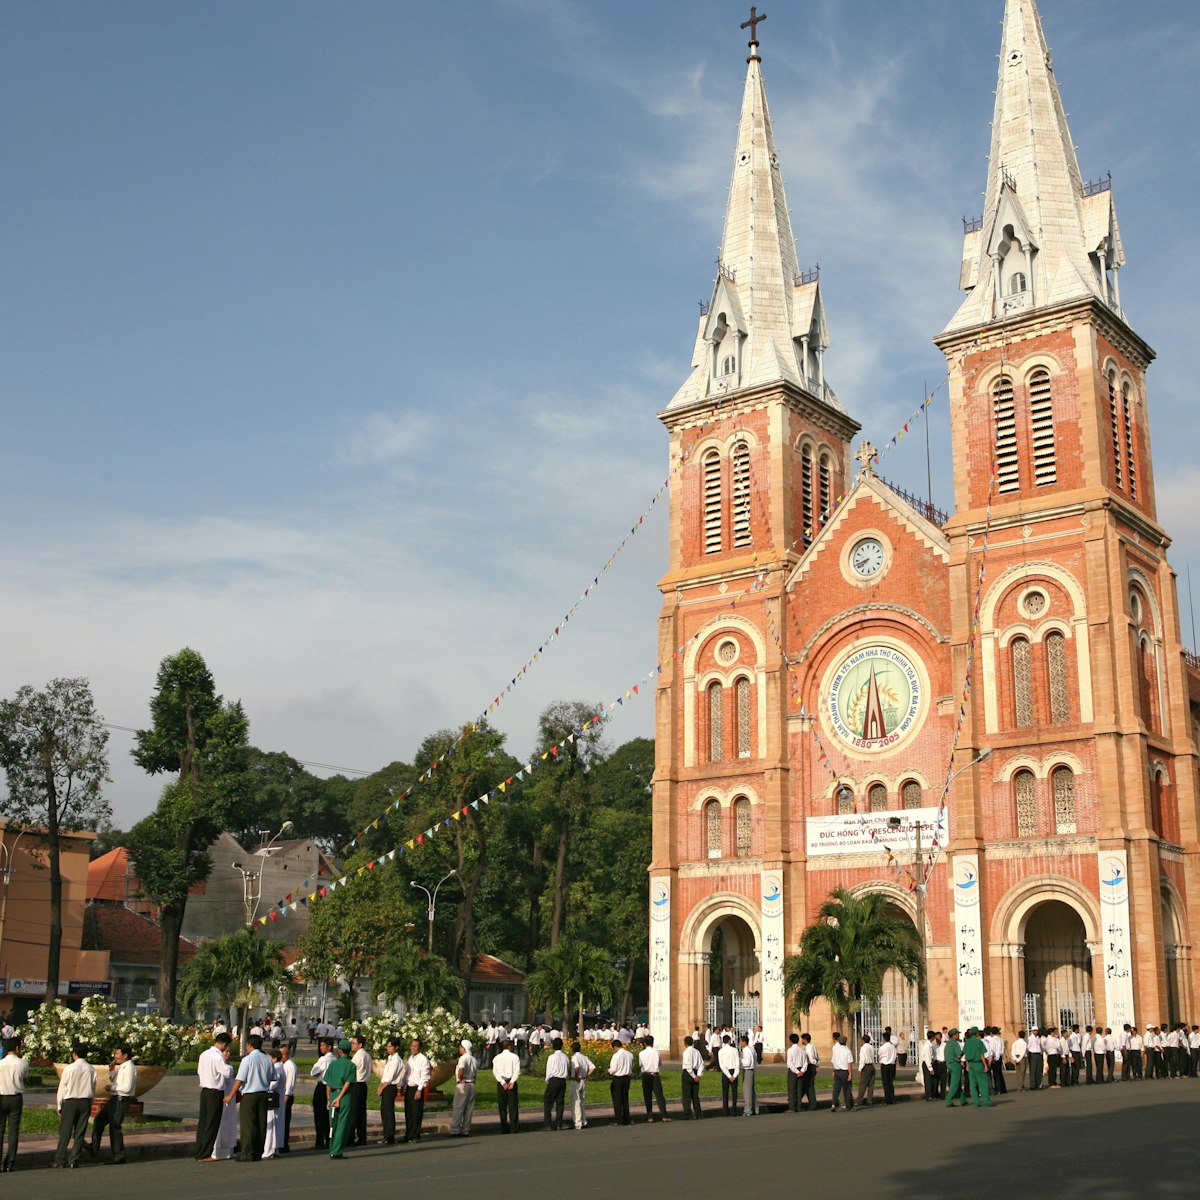 Vietnam, Ho Chi Minh City, Notre-Dame Cathedral (Saigon Notre-Dame Basilica)